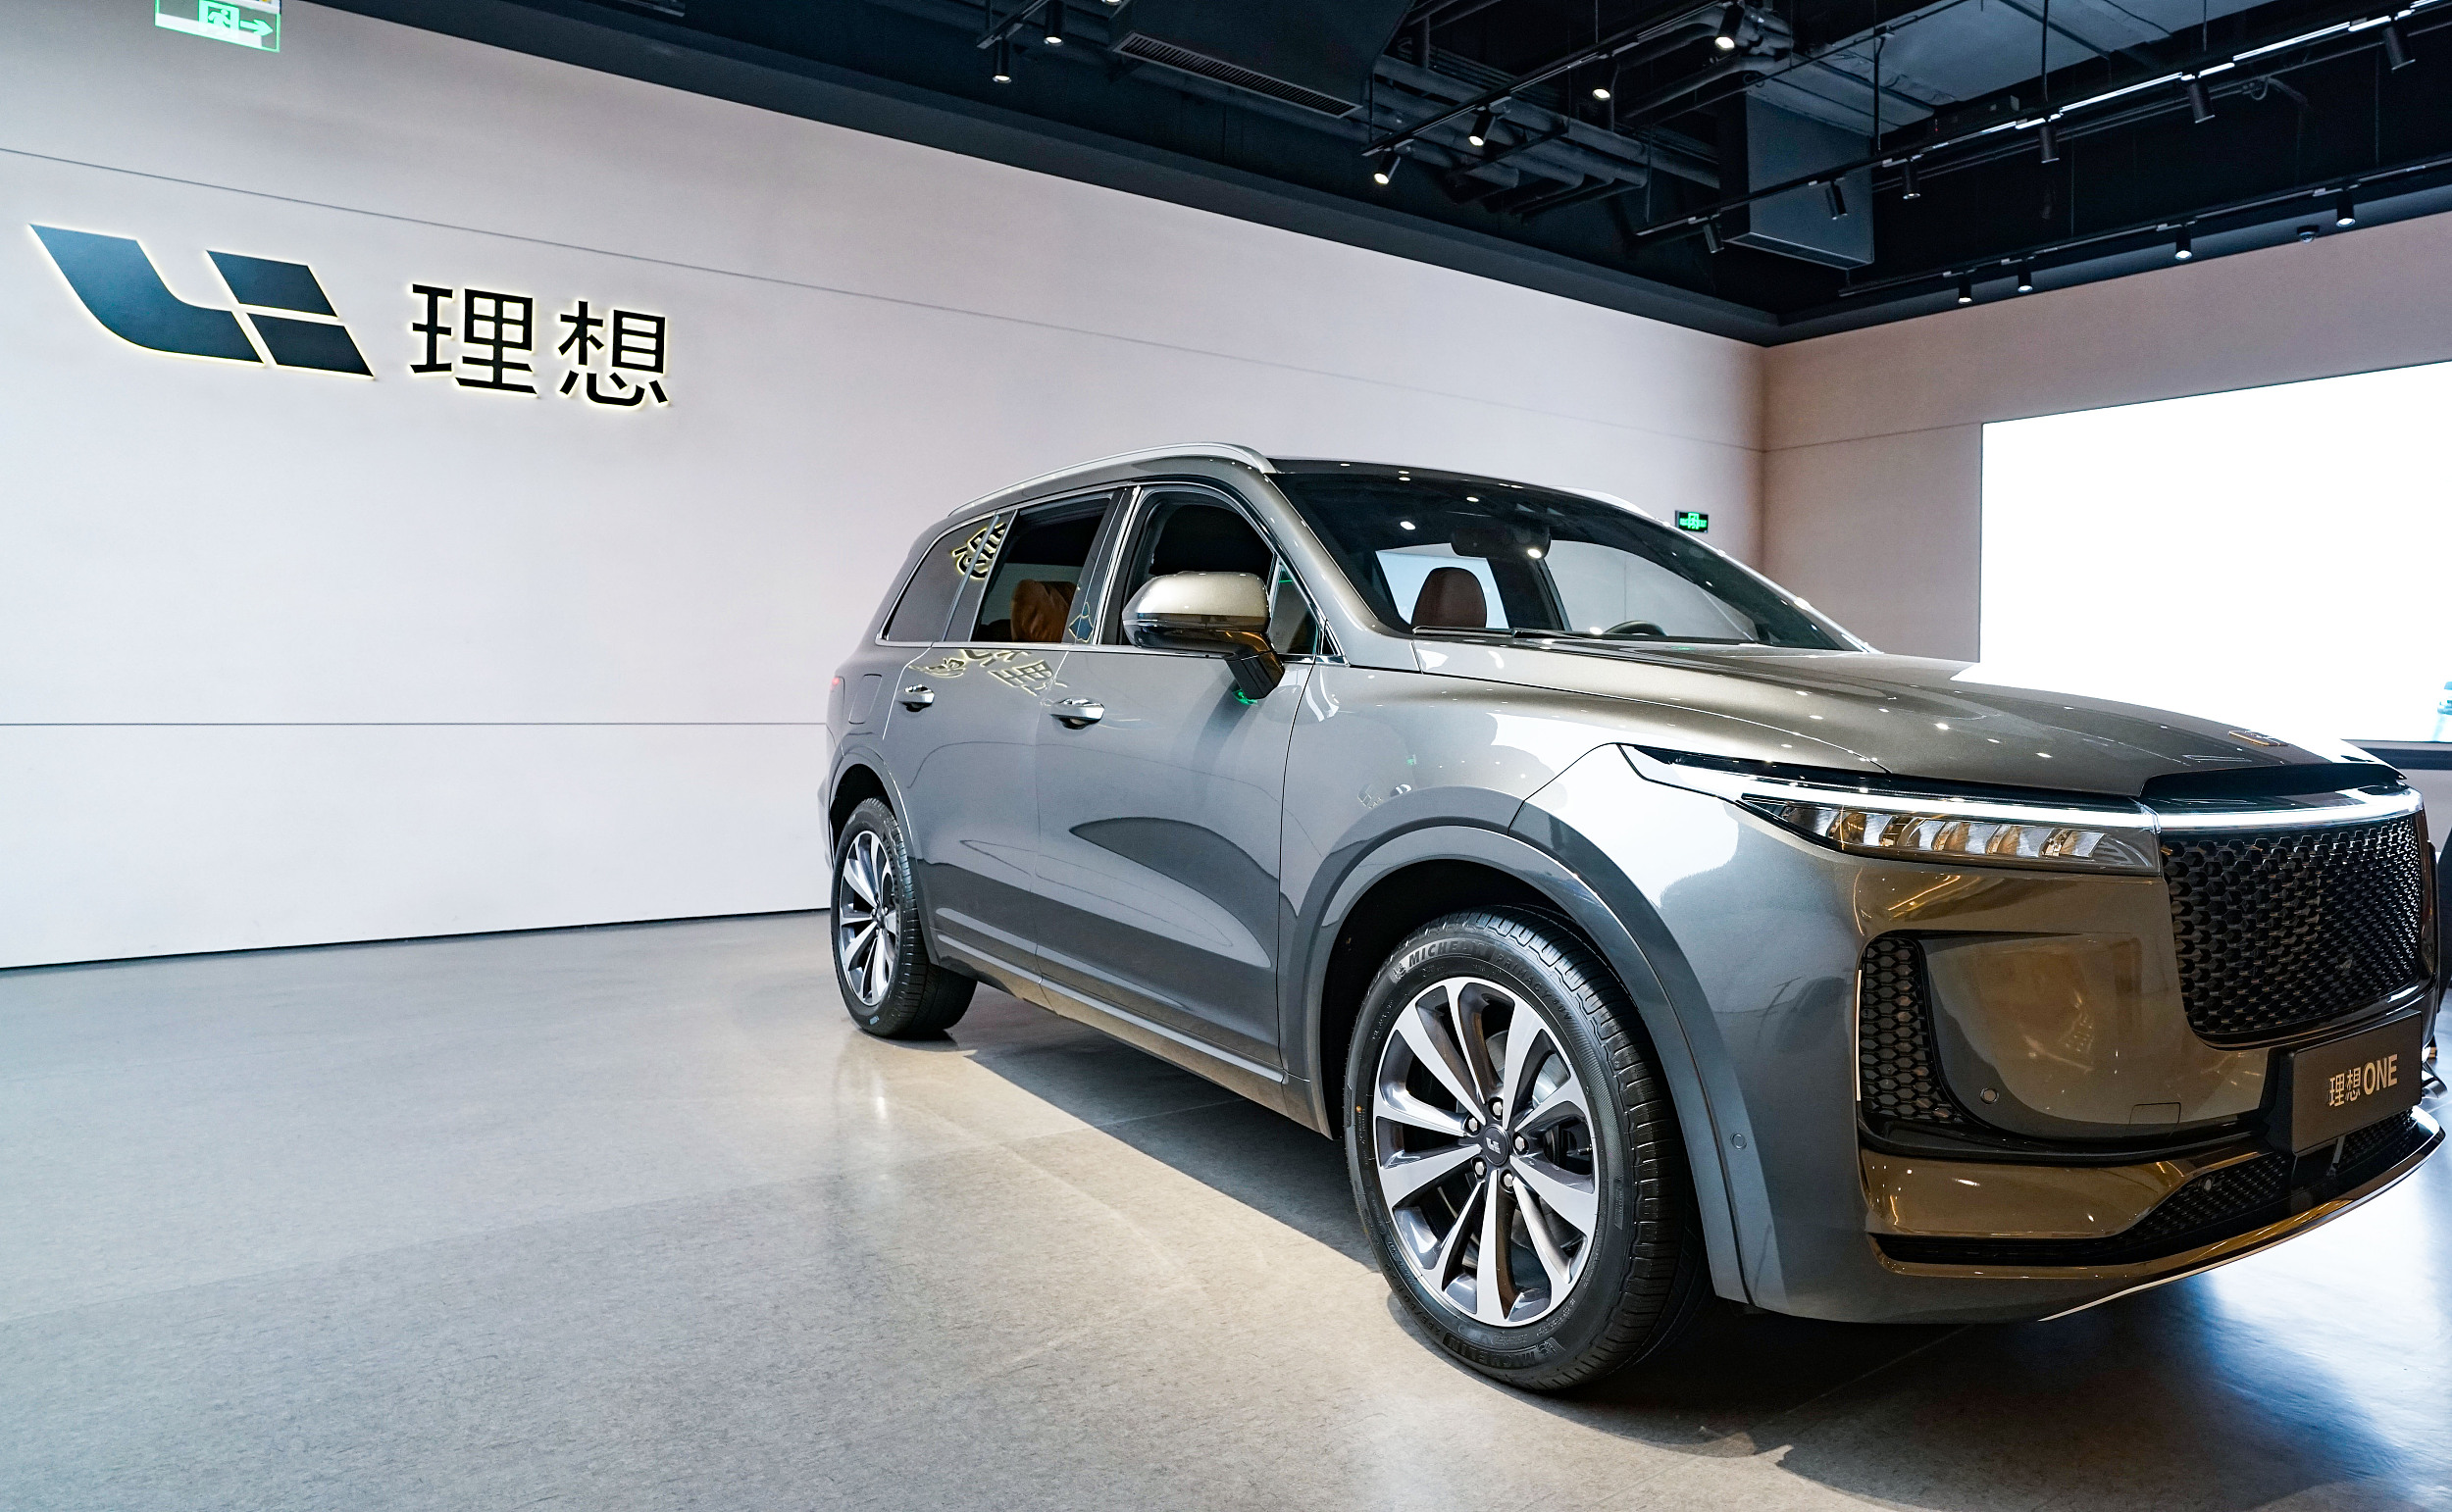 理想汽车与重庆市政府签署合作框架协议 将加大在渝投资布局-中国质量新闻网